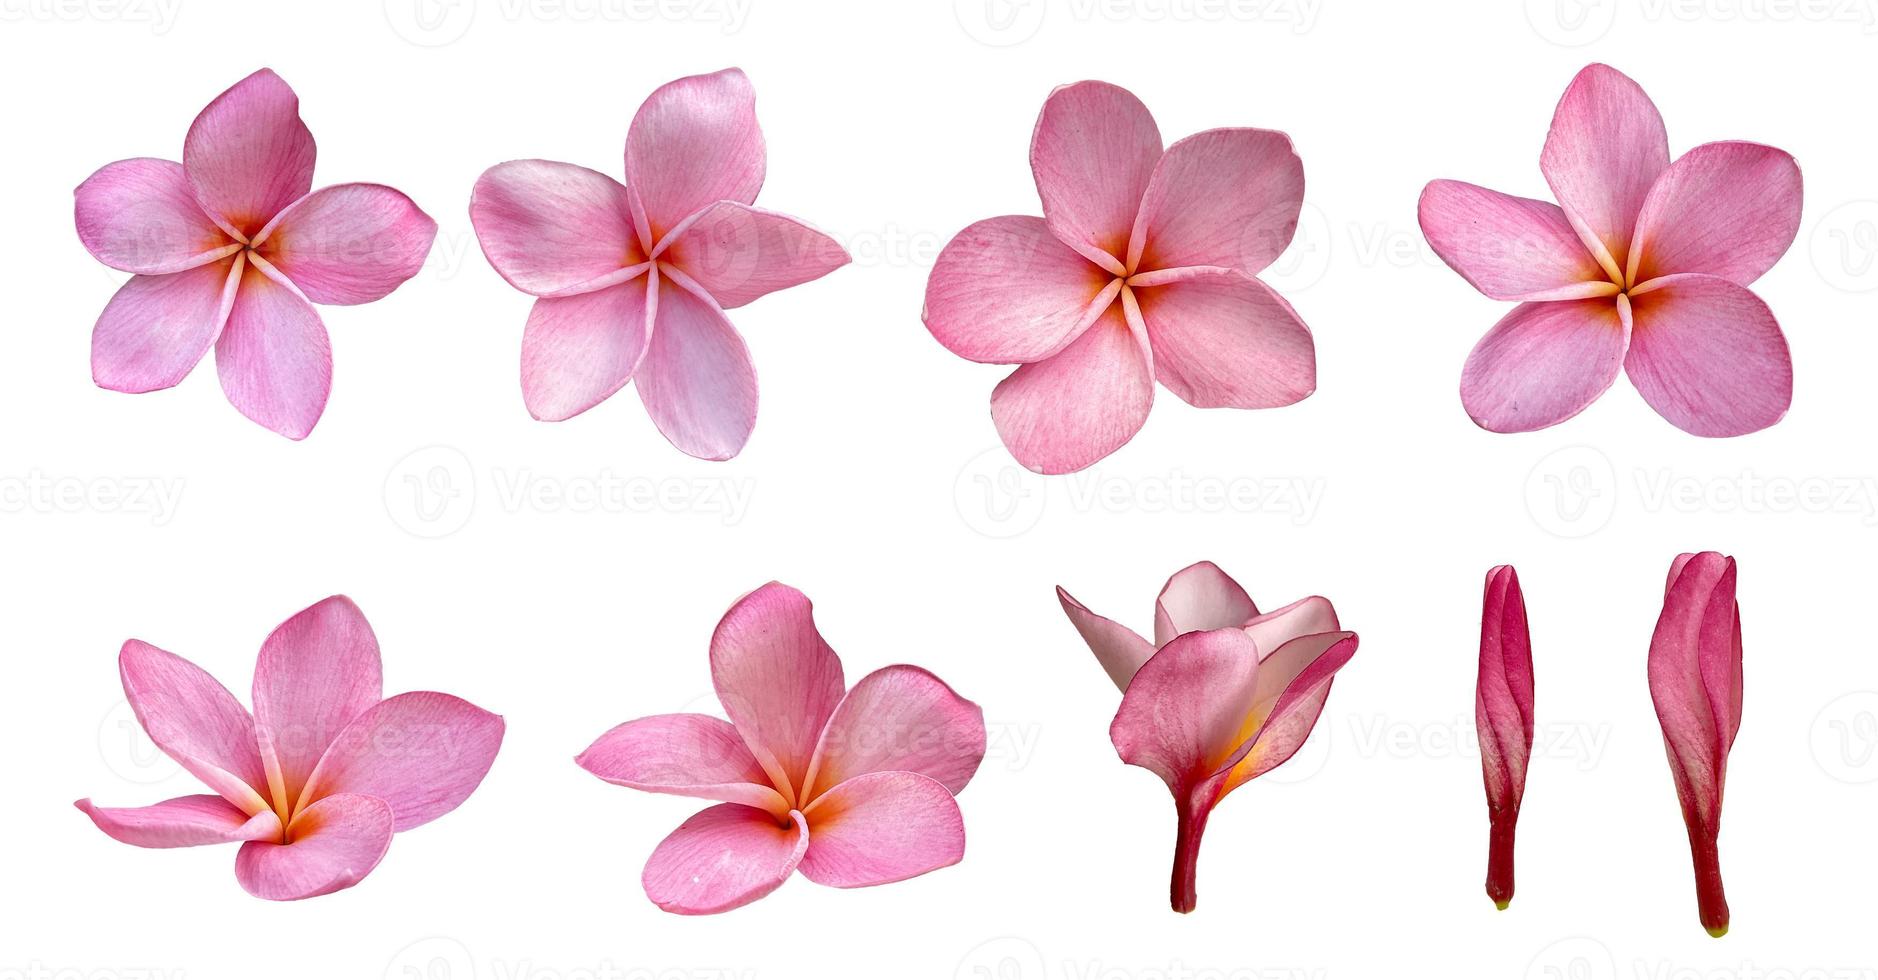 Rosa Plumeria-Blume oder Frangipani-Blume isoliert weißer Hintergrund foto